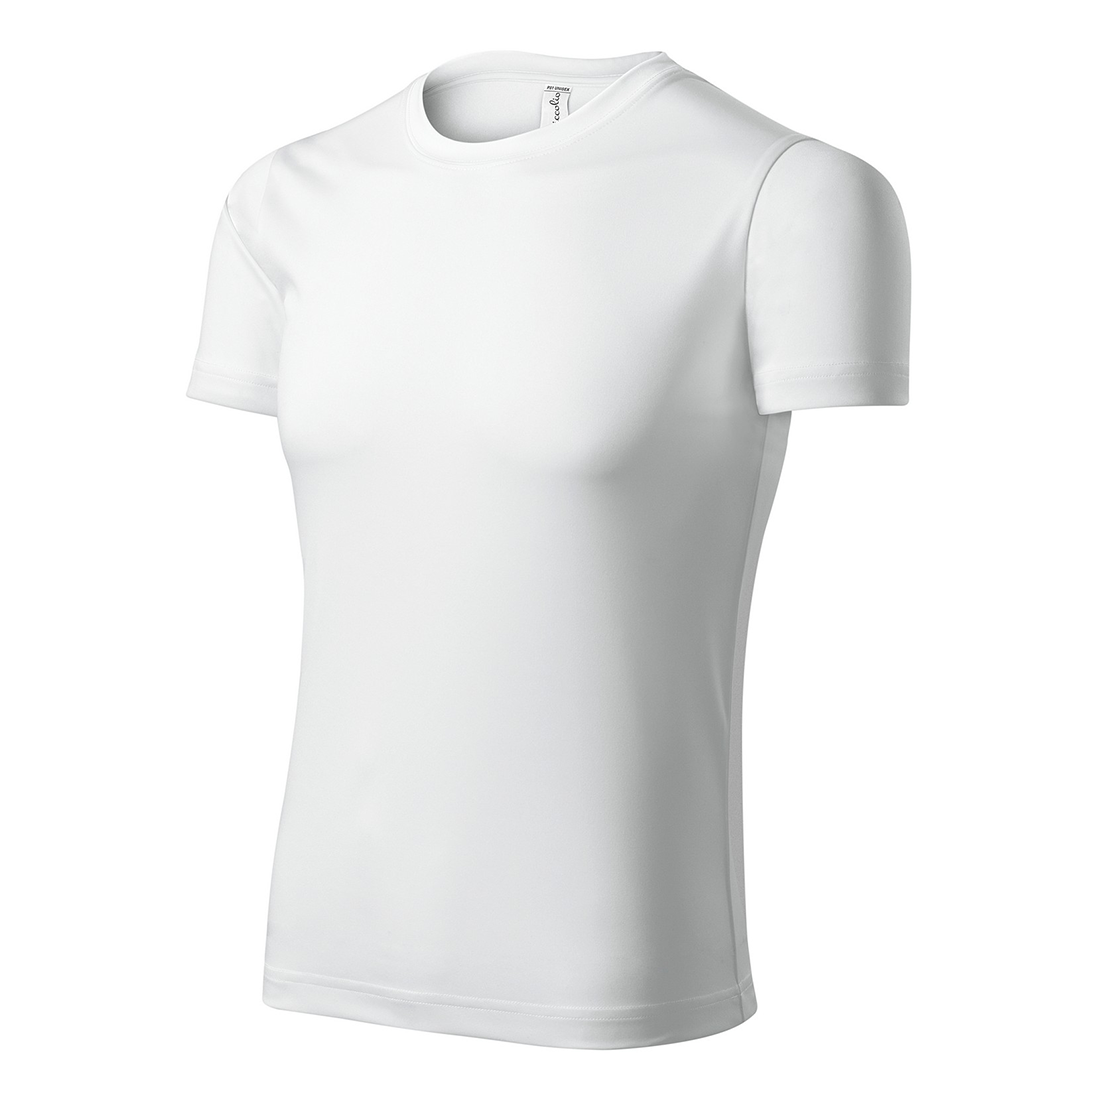 Tee-shirt unisex PIXEL - Les vêtements de protection